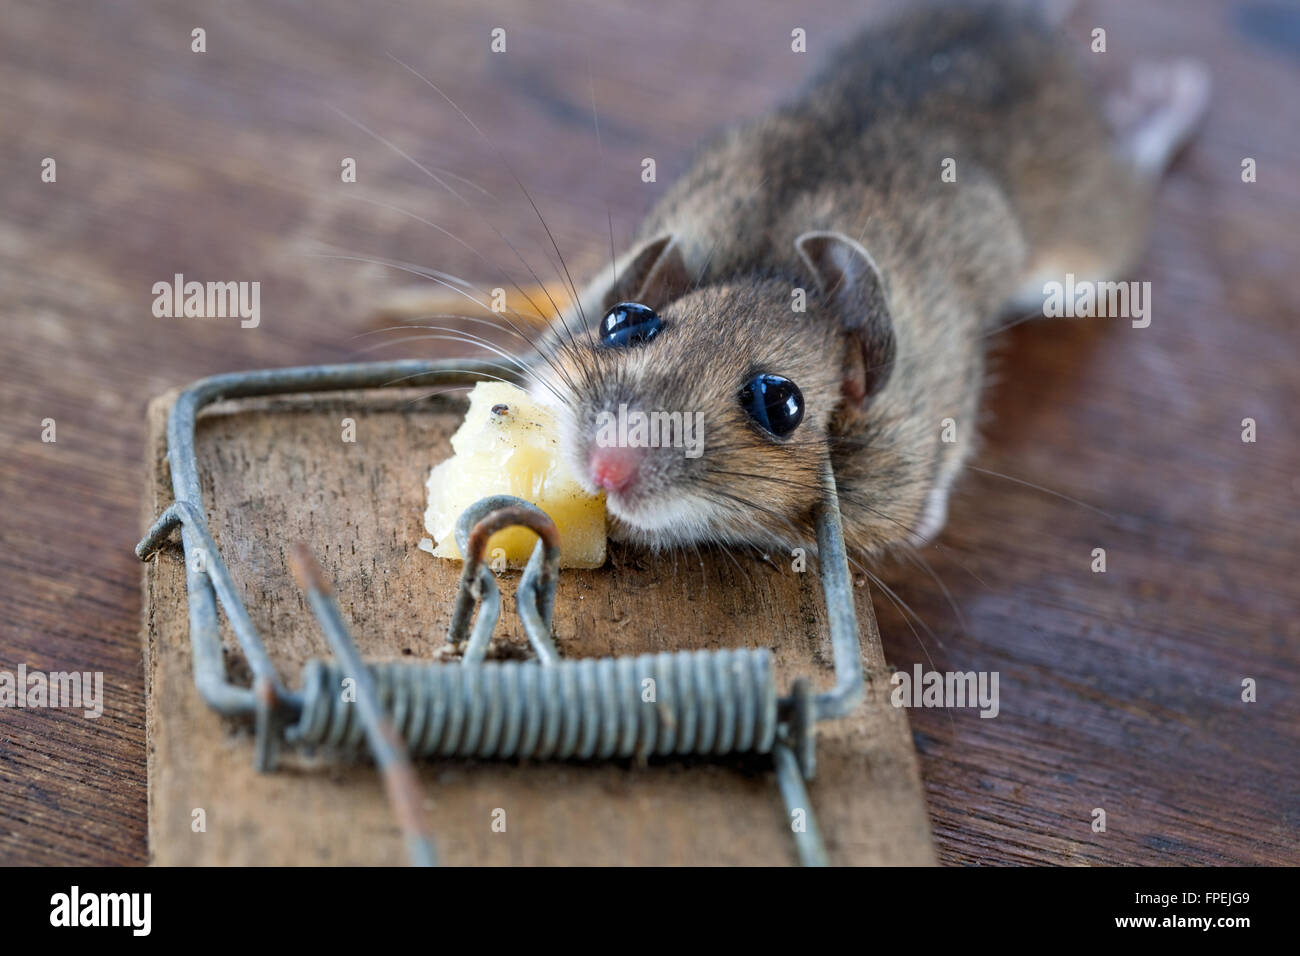 Ratón de madera o de larga cola de ratón de campo (Apodemus sylvaticus). Atrapado, humaely muertas, en una trampa de resorte. Puede ser una plaga en greenhou Foto de stock